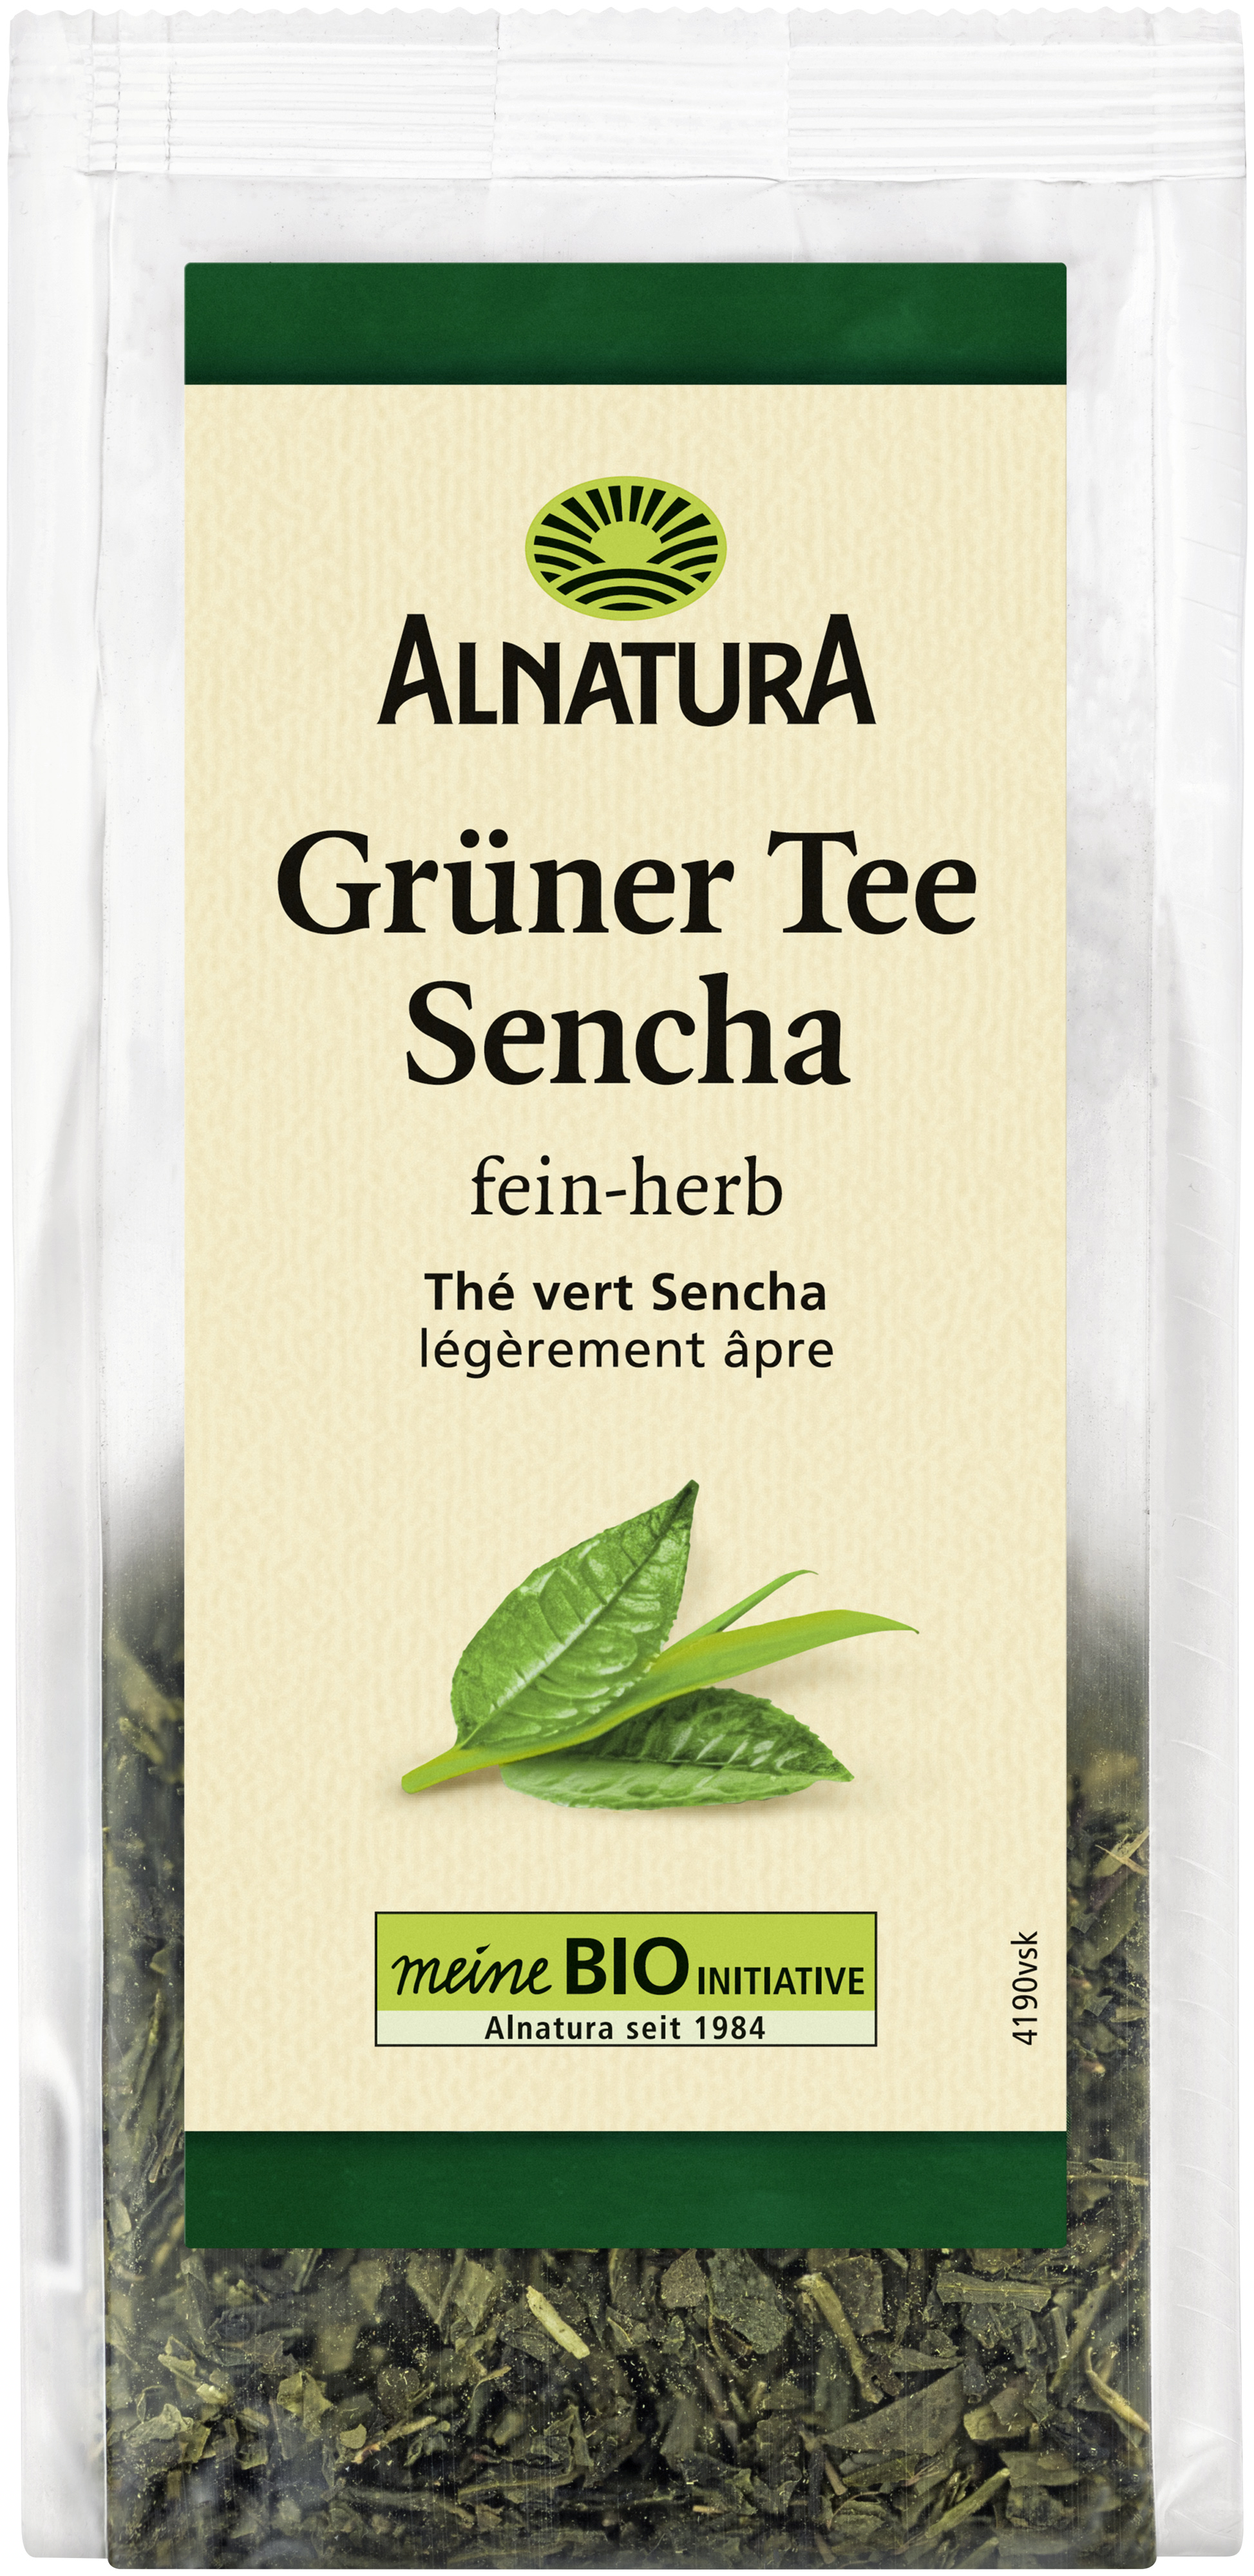 Grüner Tee Sencha, lose (75 g) in Bio-Qualität online kaufen - Alnatura